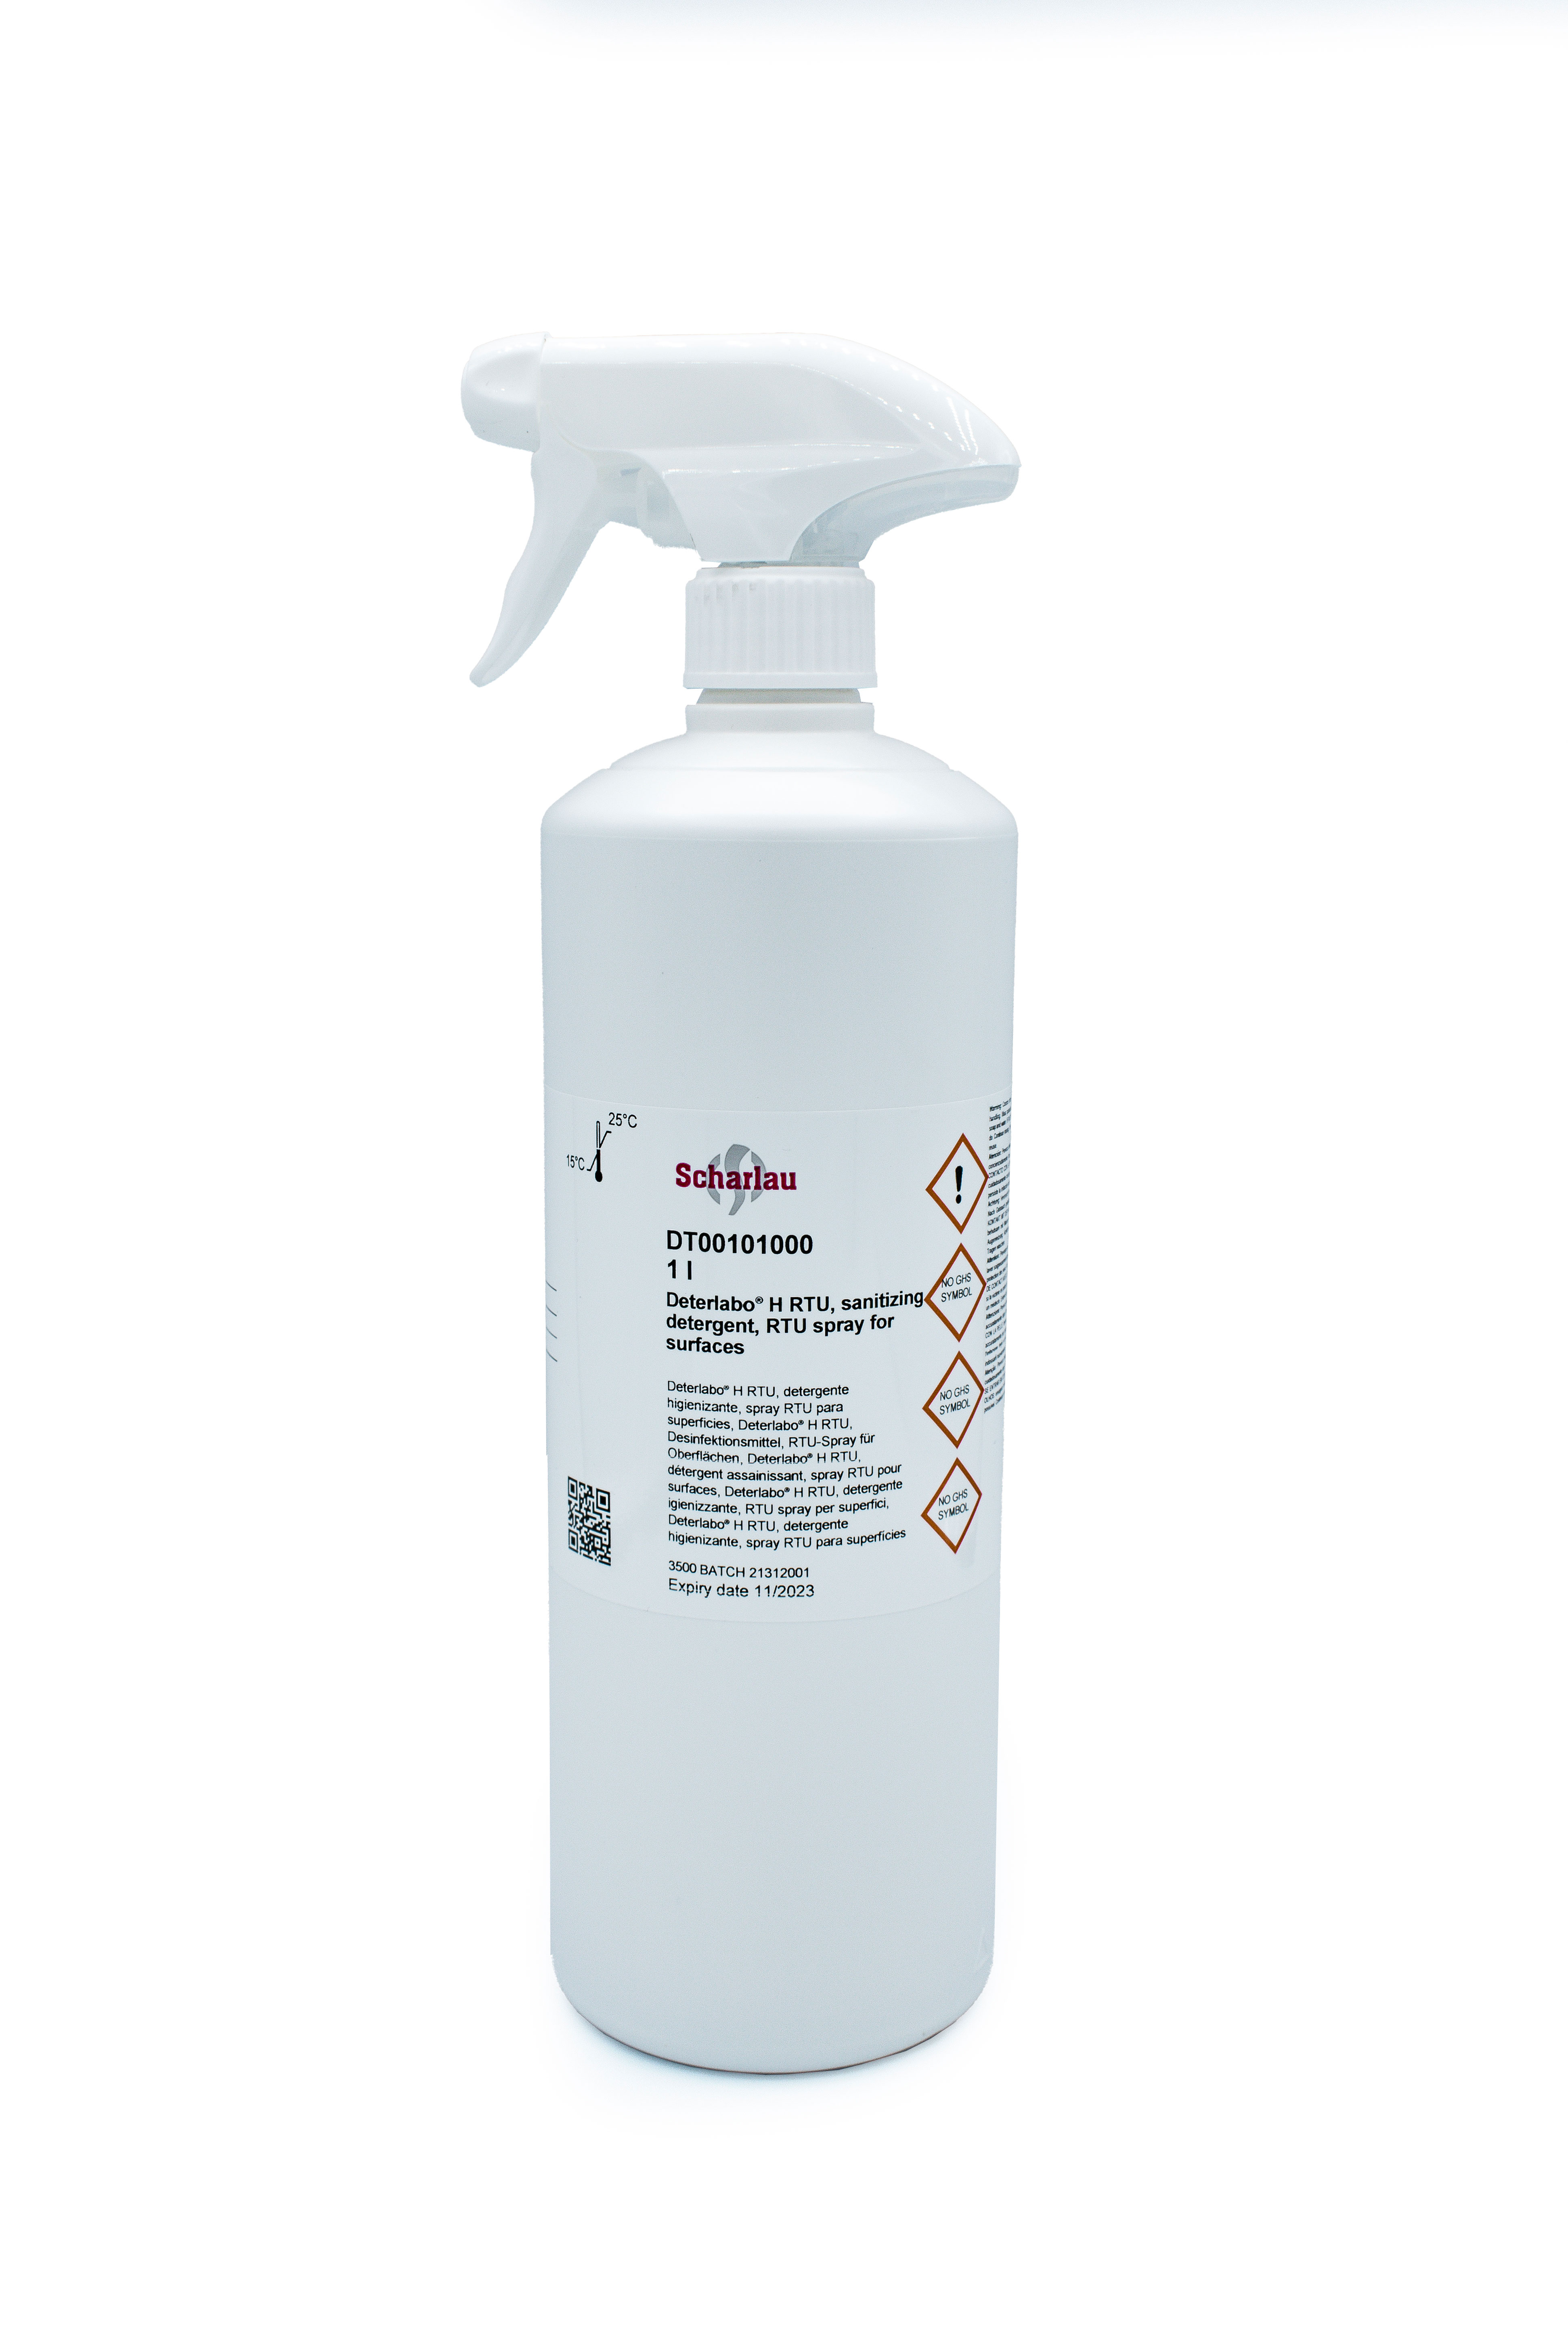 Detergente higienizante, spray RTU para superficies, Deterlabo® H RTU